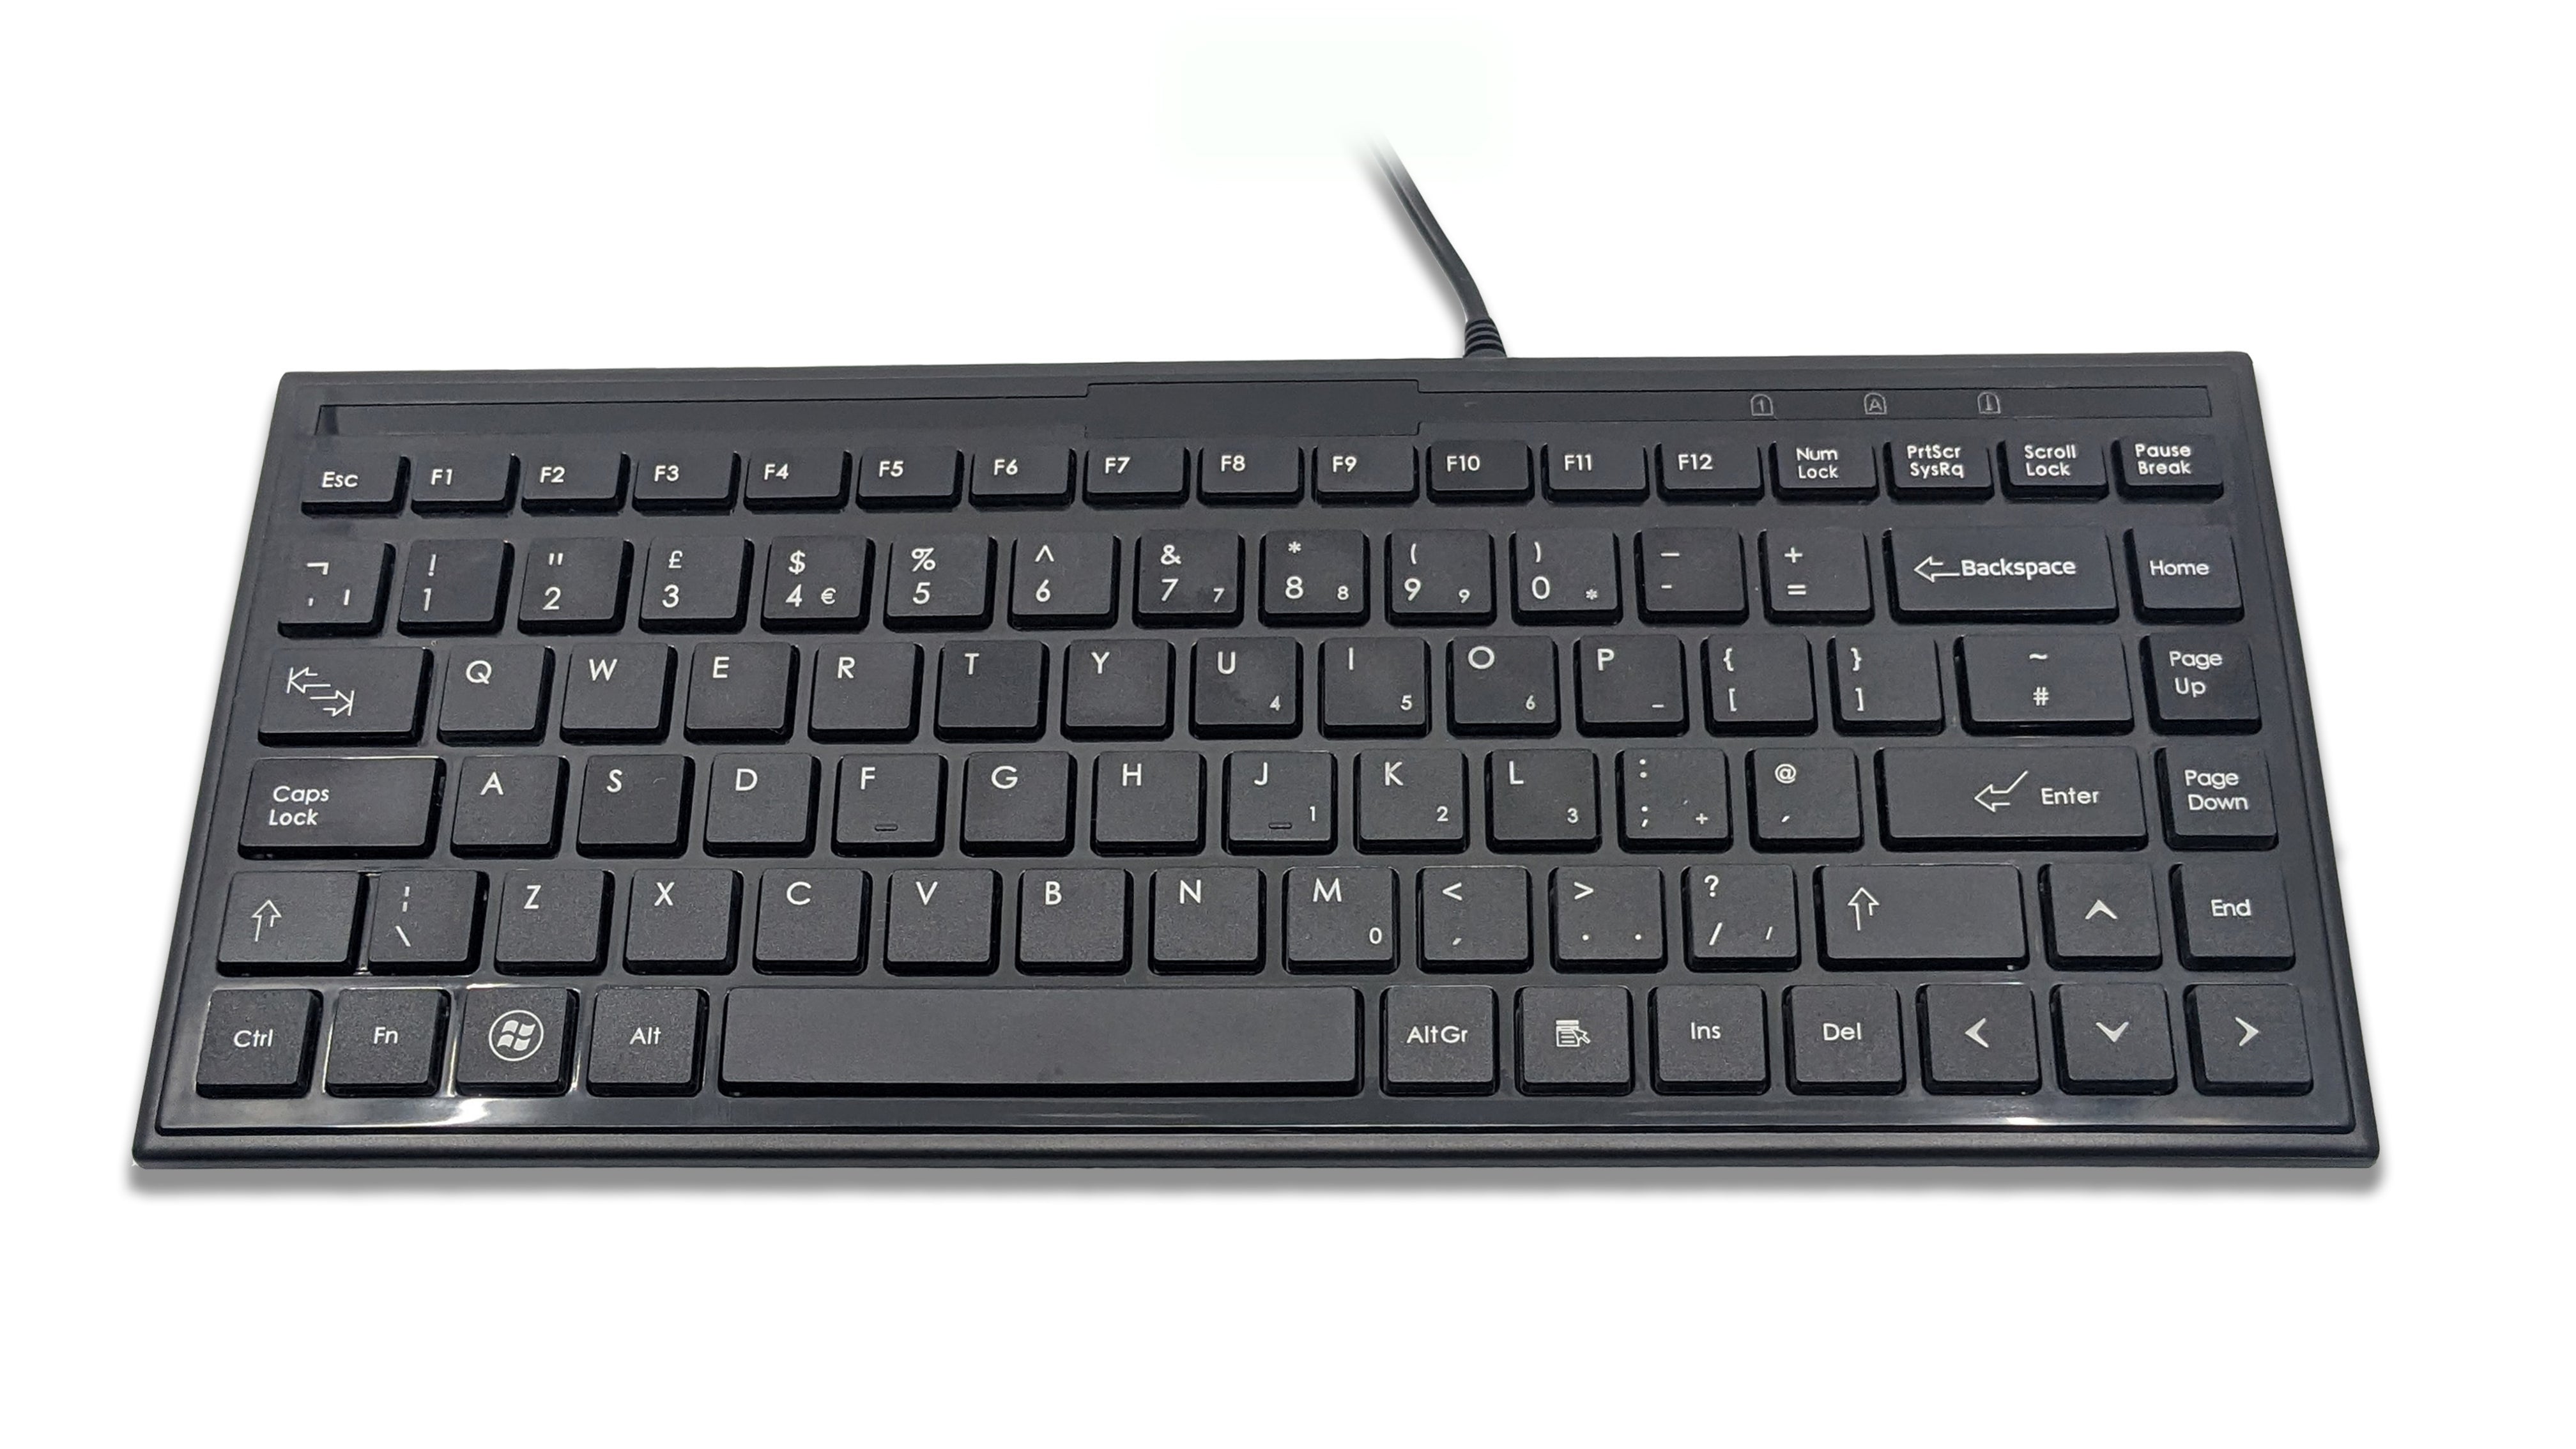 Accuratus 395 Black - Mini clavier USB super fin avec touches carrées modernes